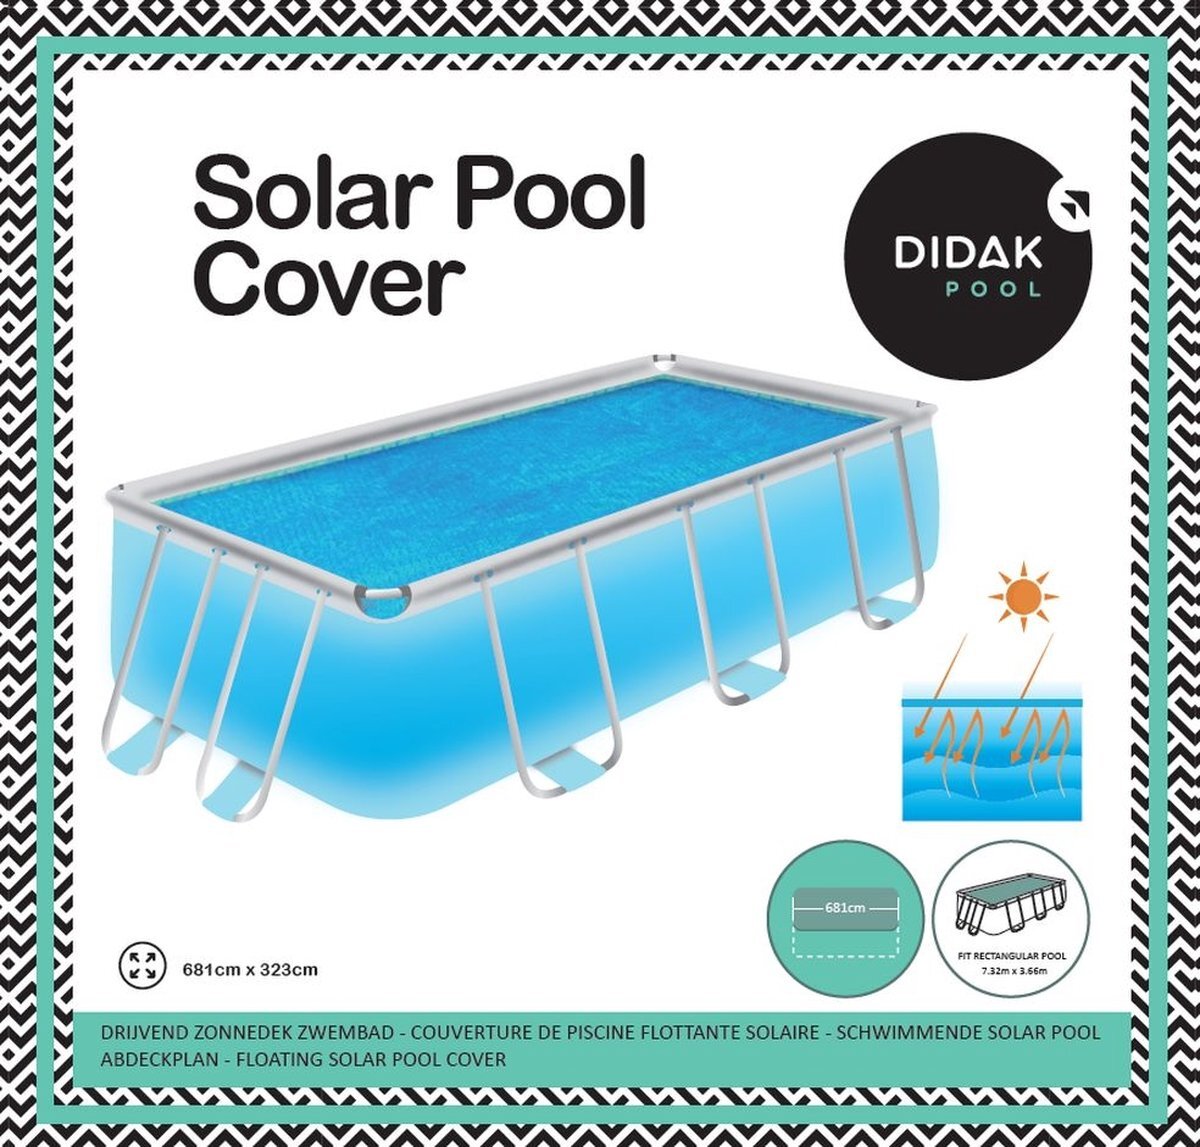 didak pool Solar Cover voor Powersteel Rechthoekig - 7,32 m